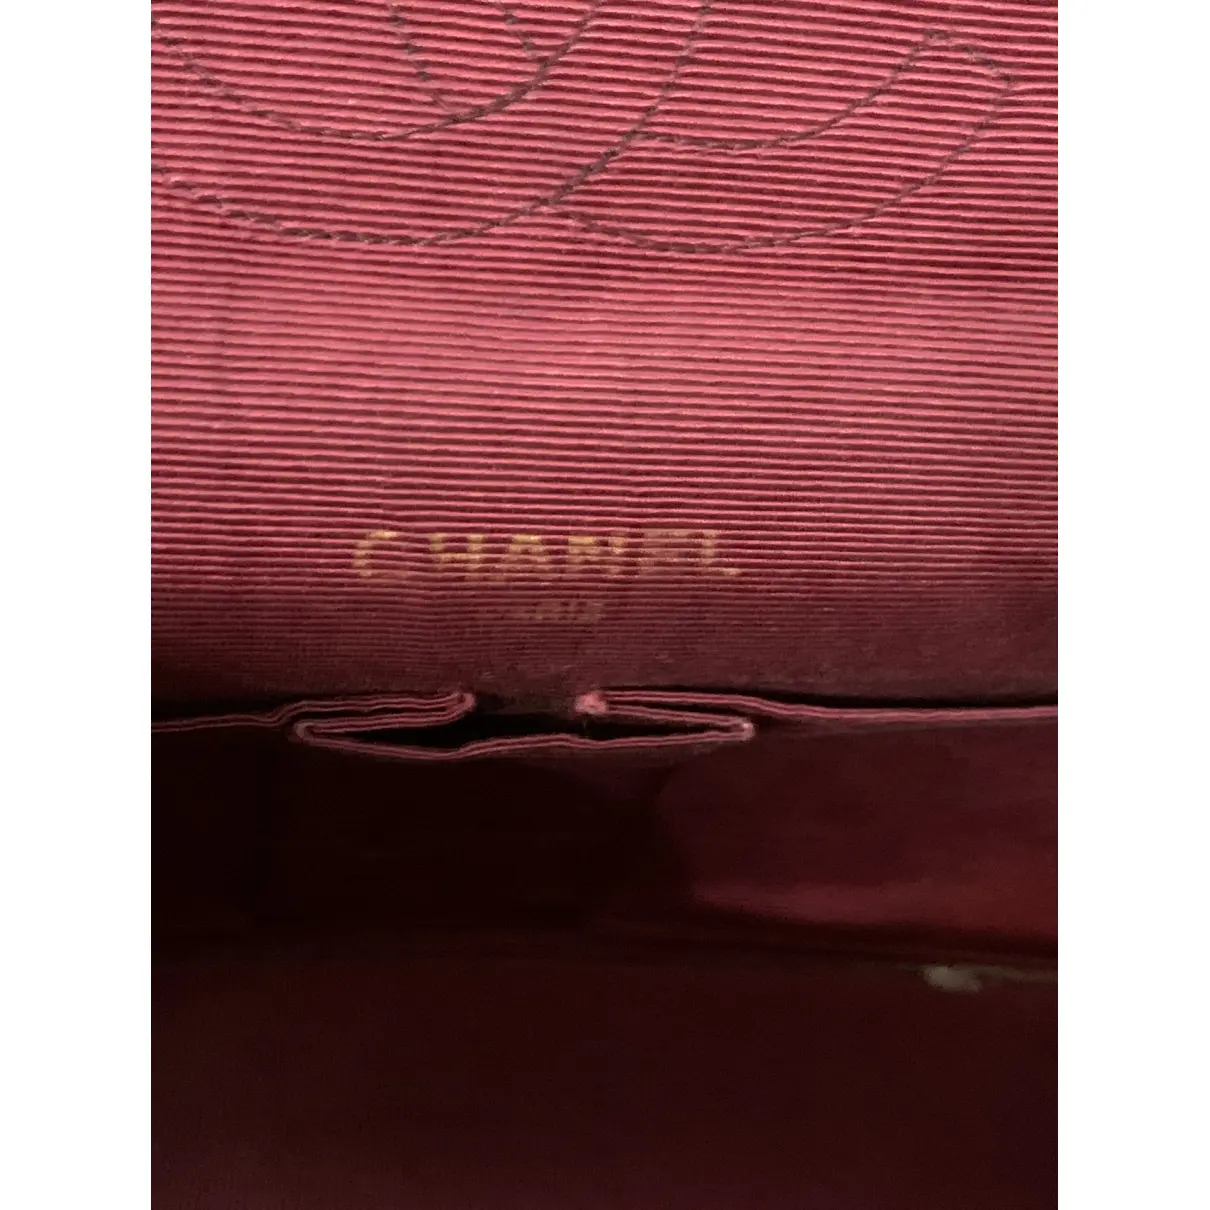 Timeless/Classique cloth satchel Chanel - Vintage